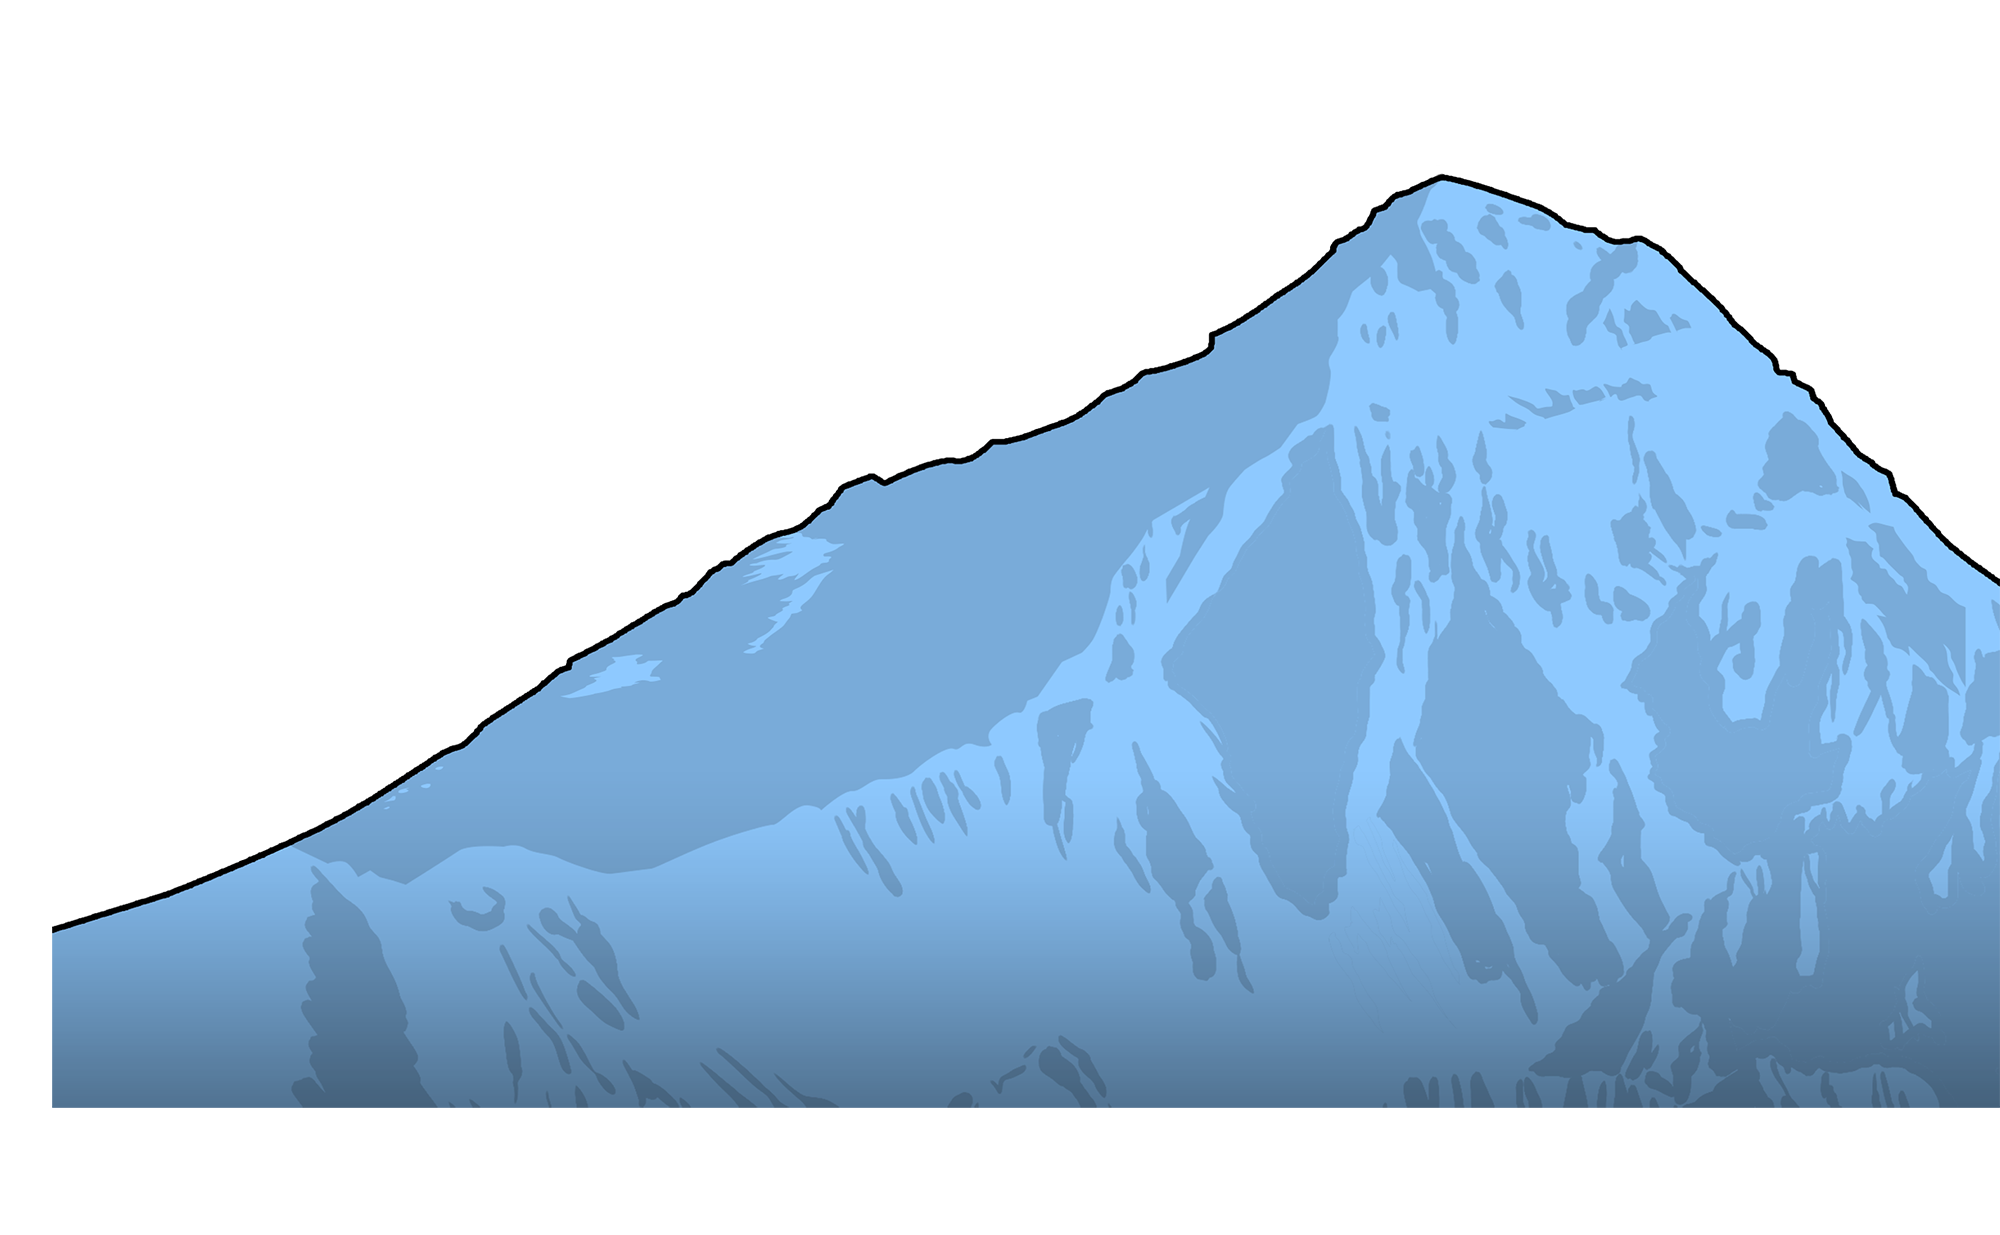 Everest Transparent Image